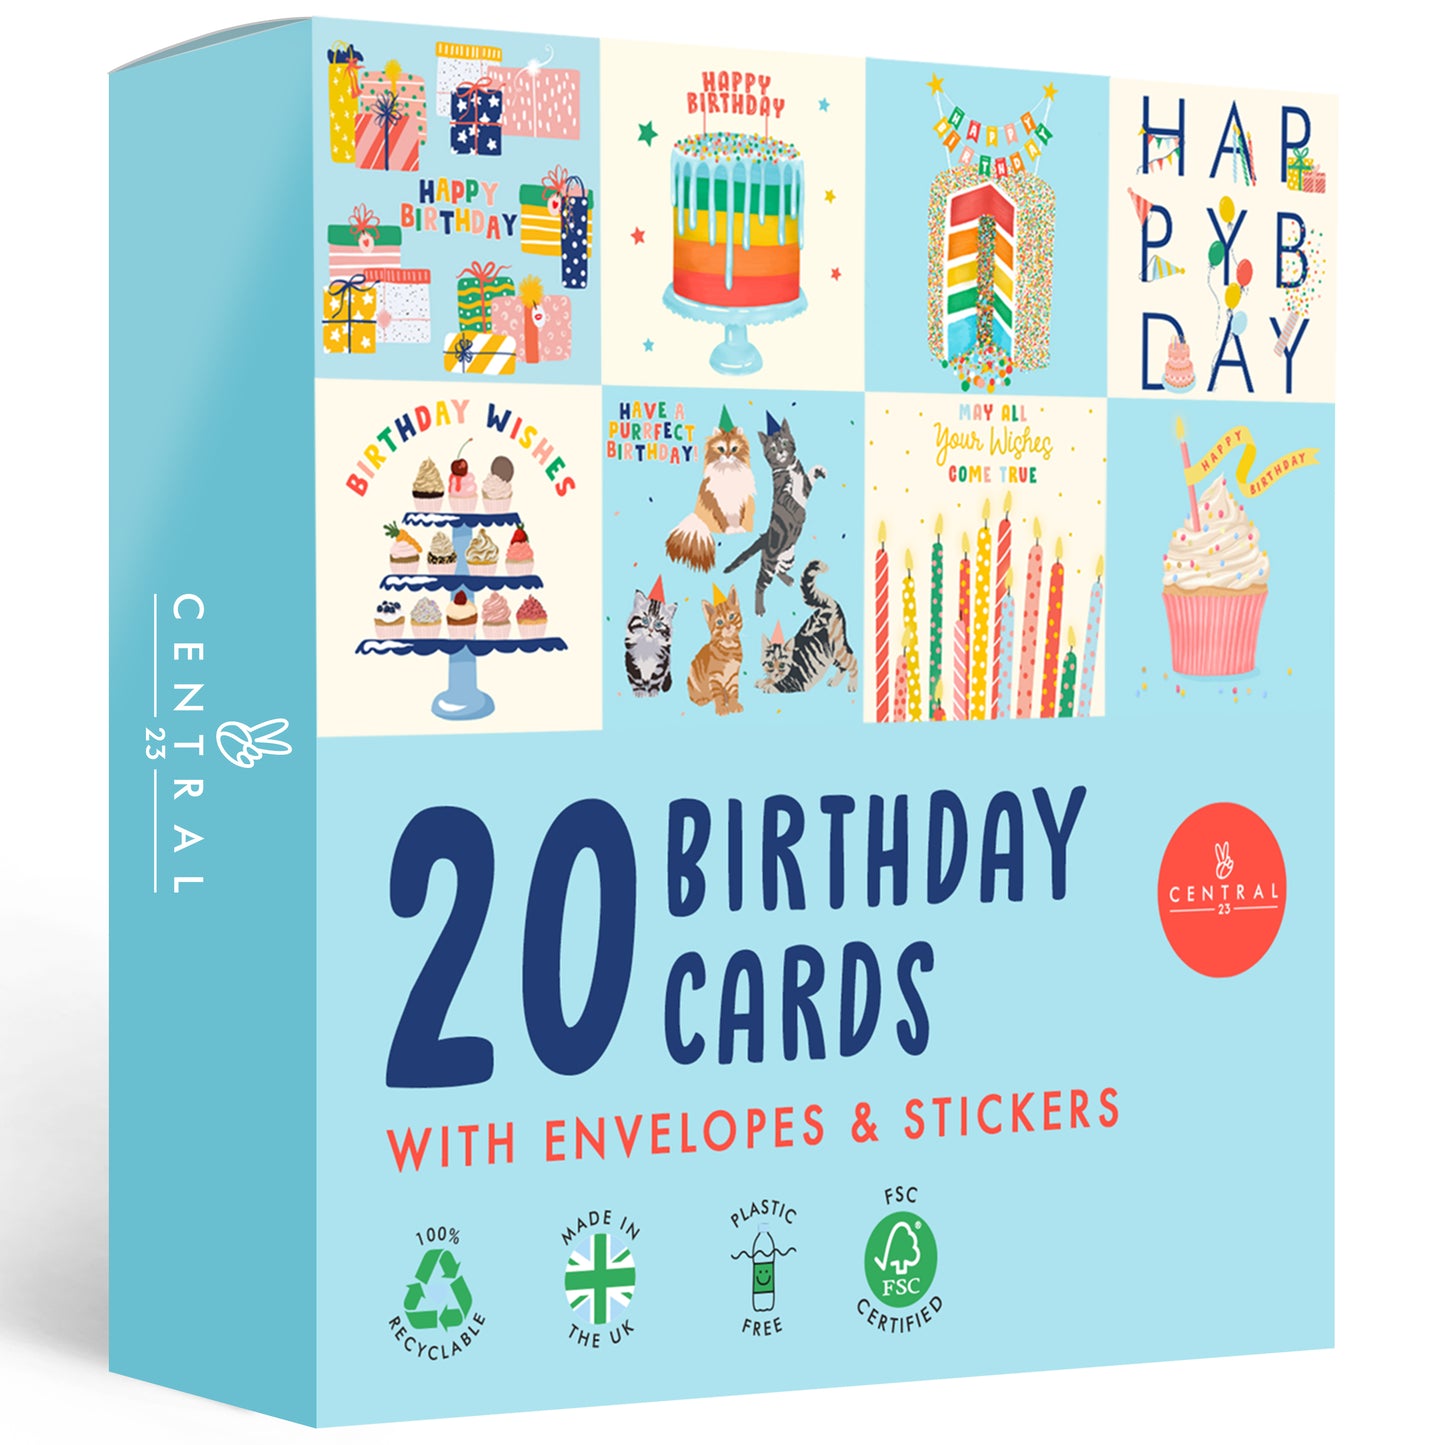 Sweet Birthday Cards Multipack - 20 Pack Assortment - For Men Women Boys Girls Him Her